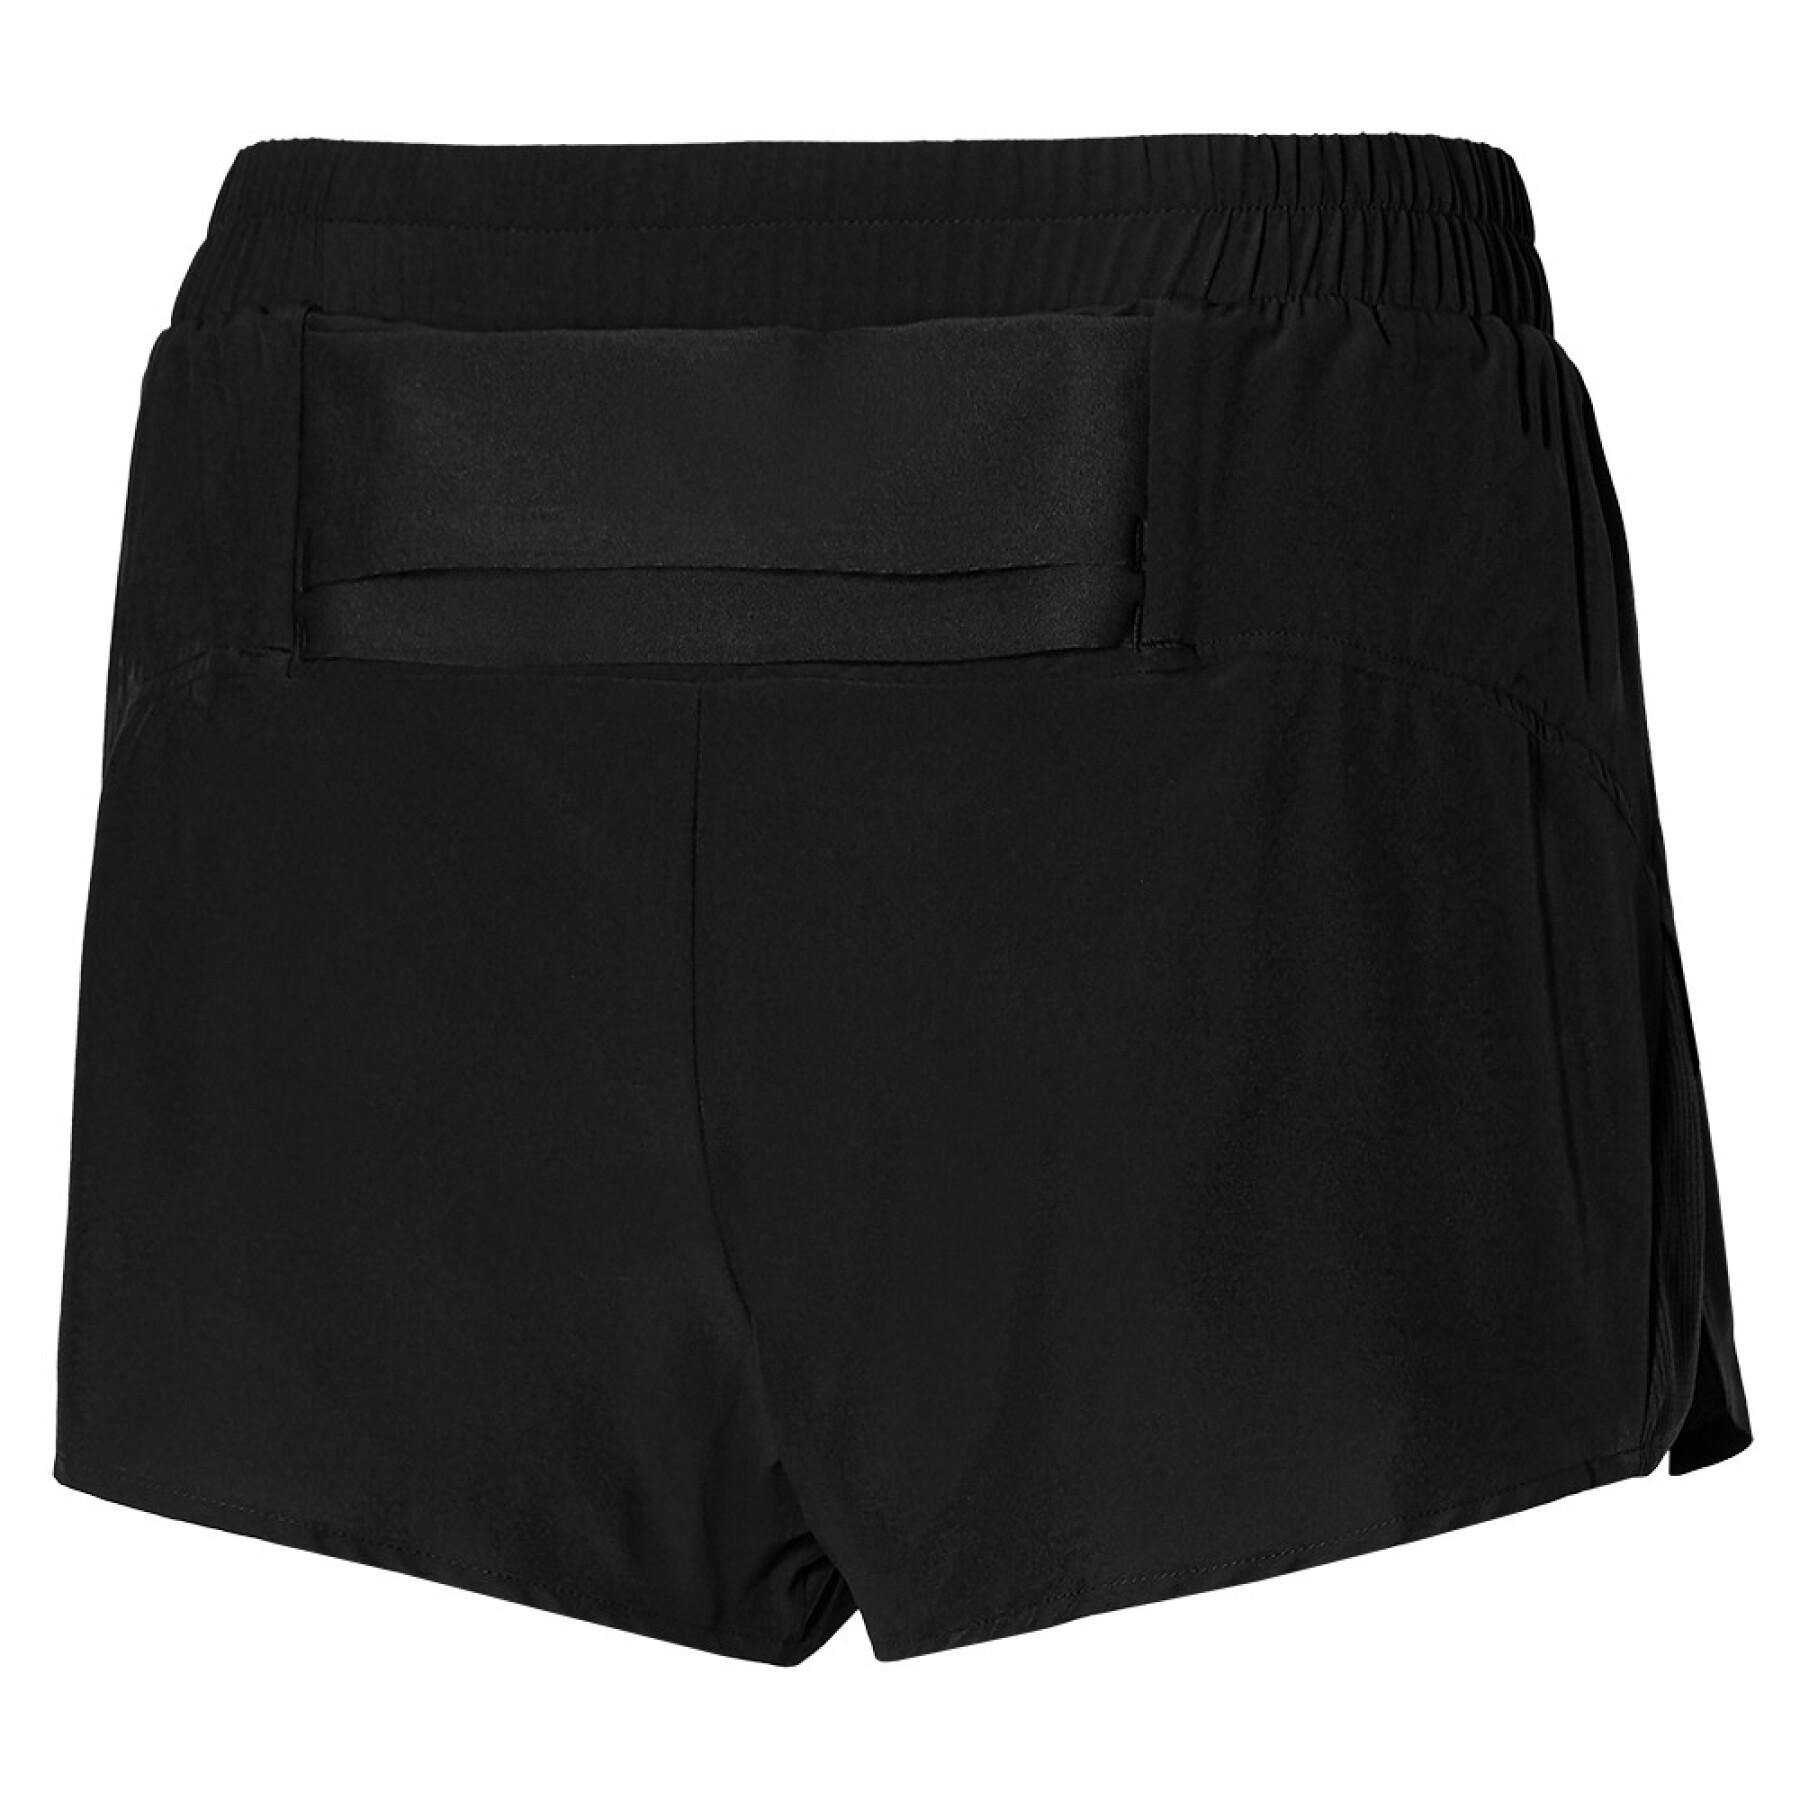 Dames shorts Mizuno Aero 2.5